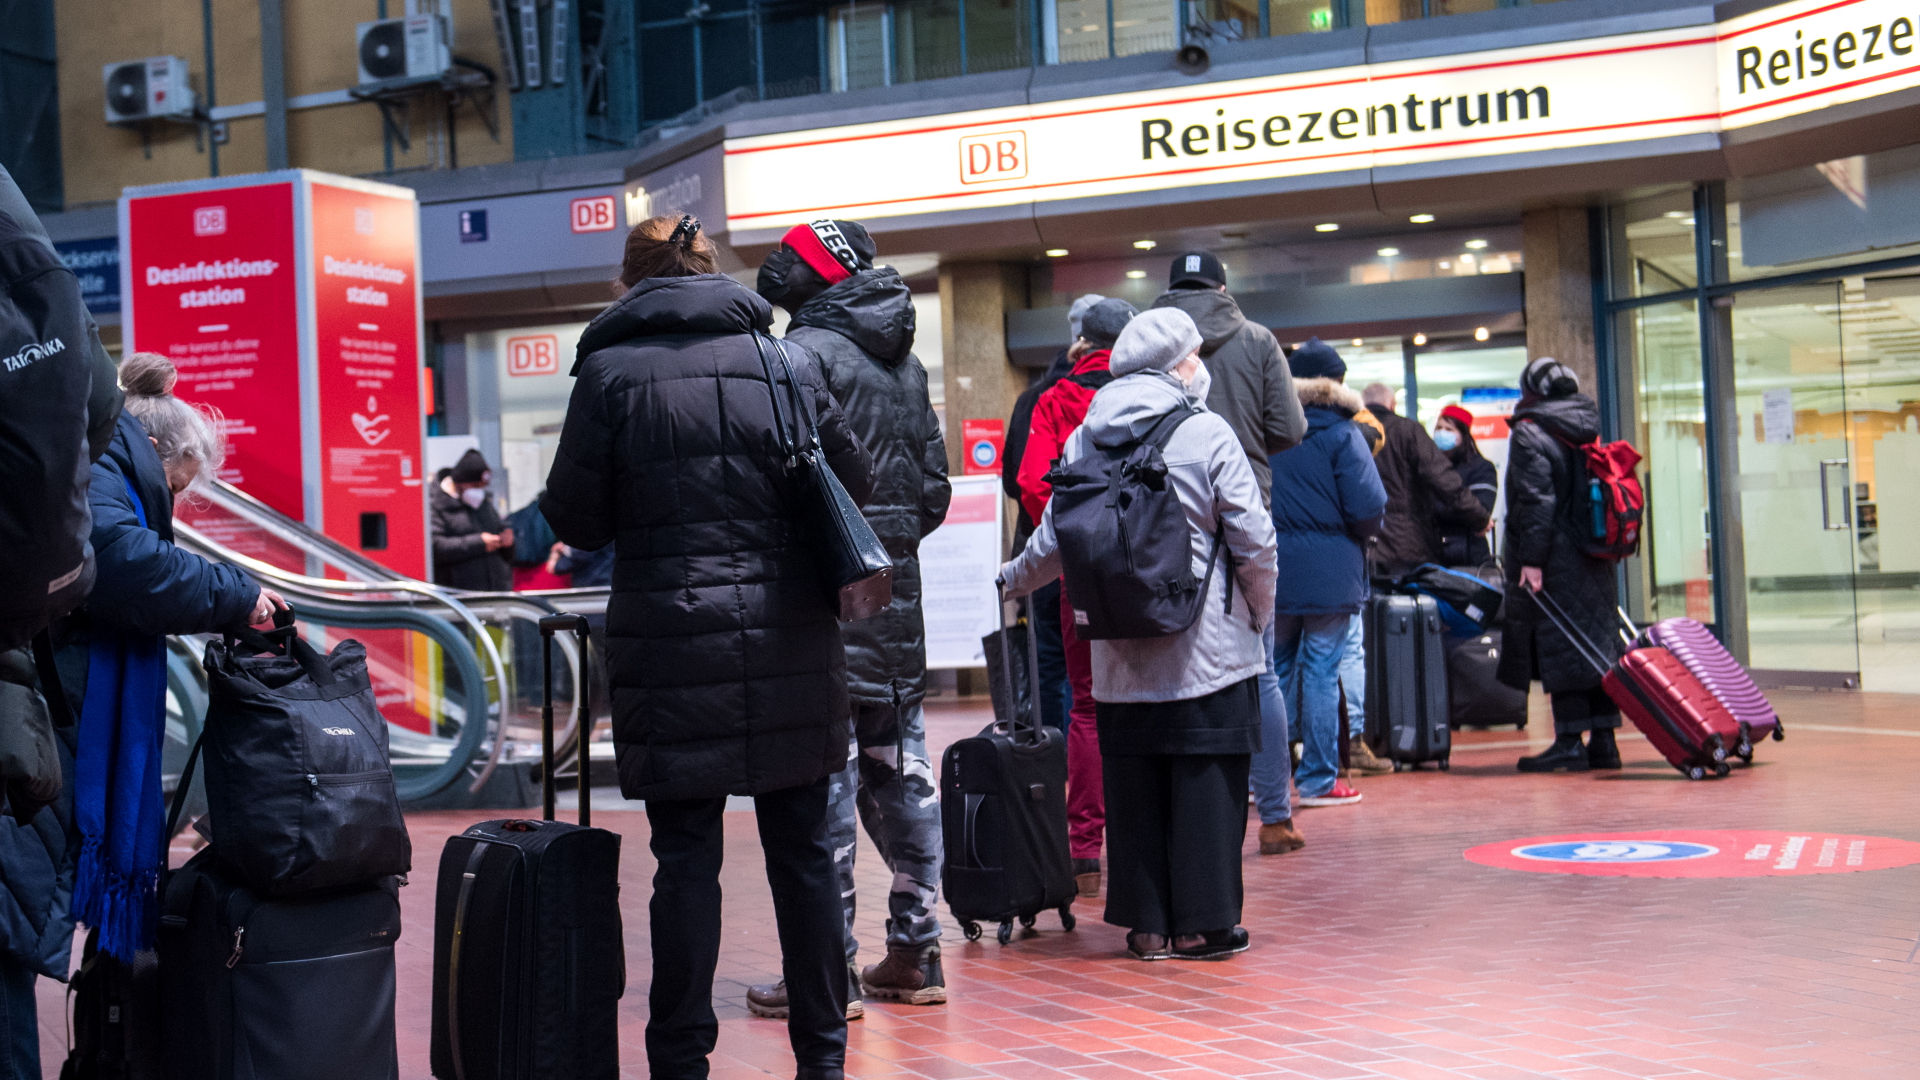 Reisende warten im Hamburger Hauptbahnhof vor dem Reisezentrum | dpa